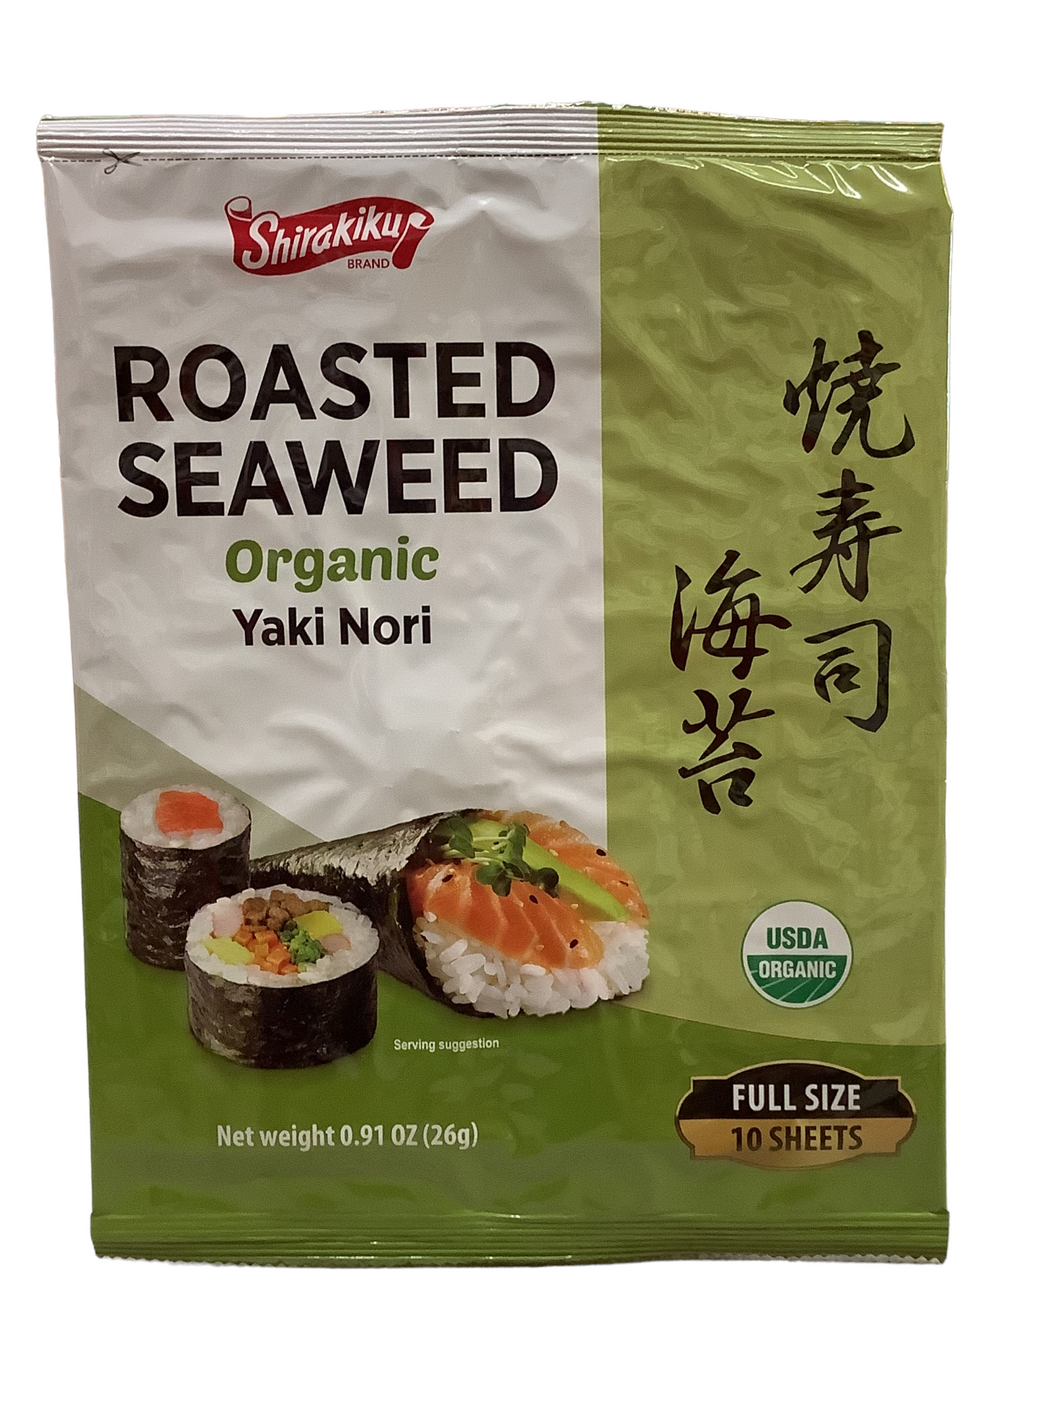 Shirakiku Roasted Organic Seaweed (Yaki Nori)